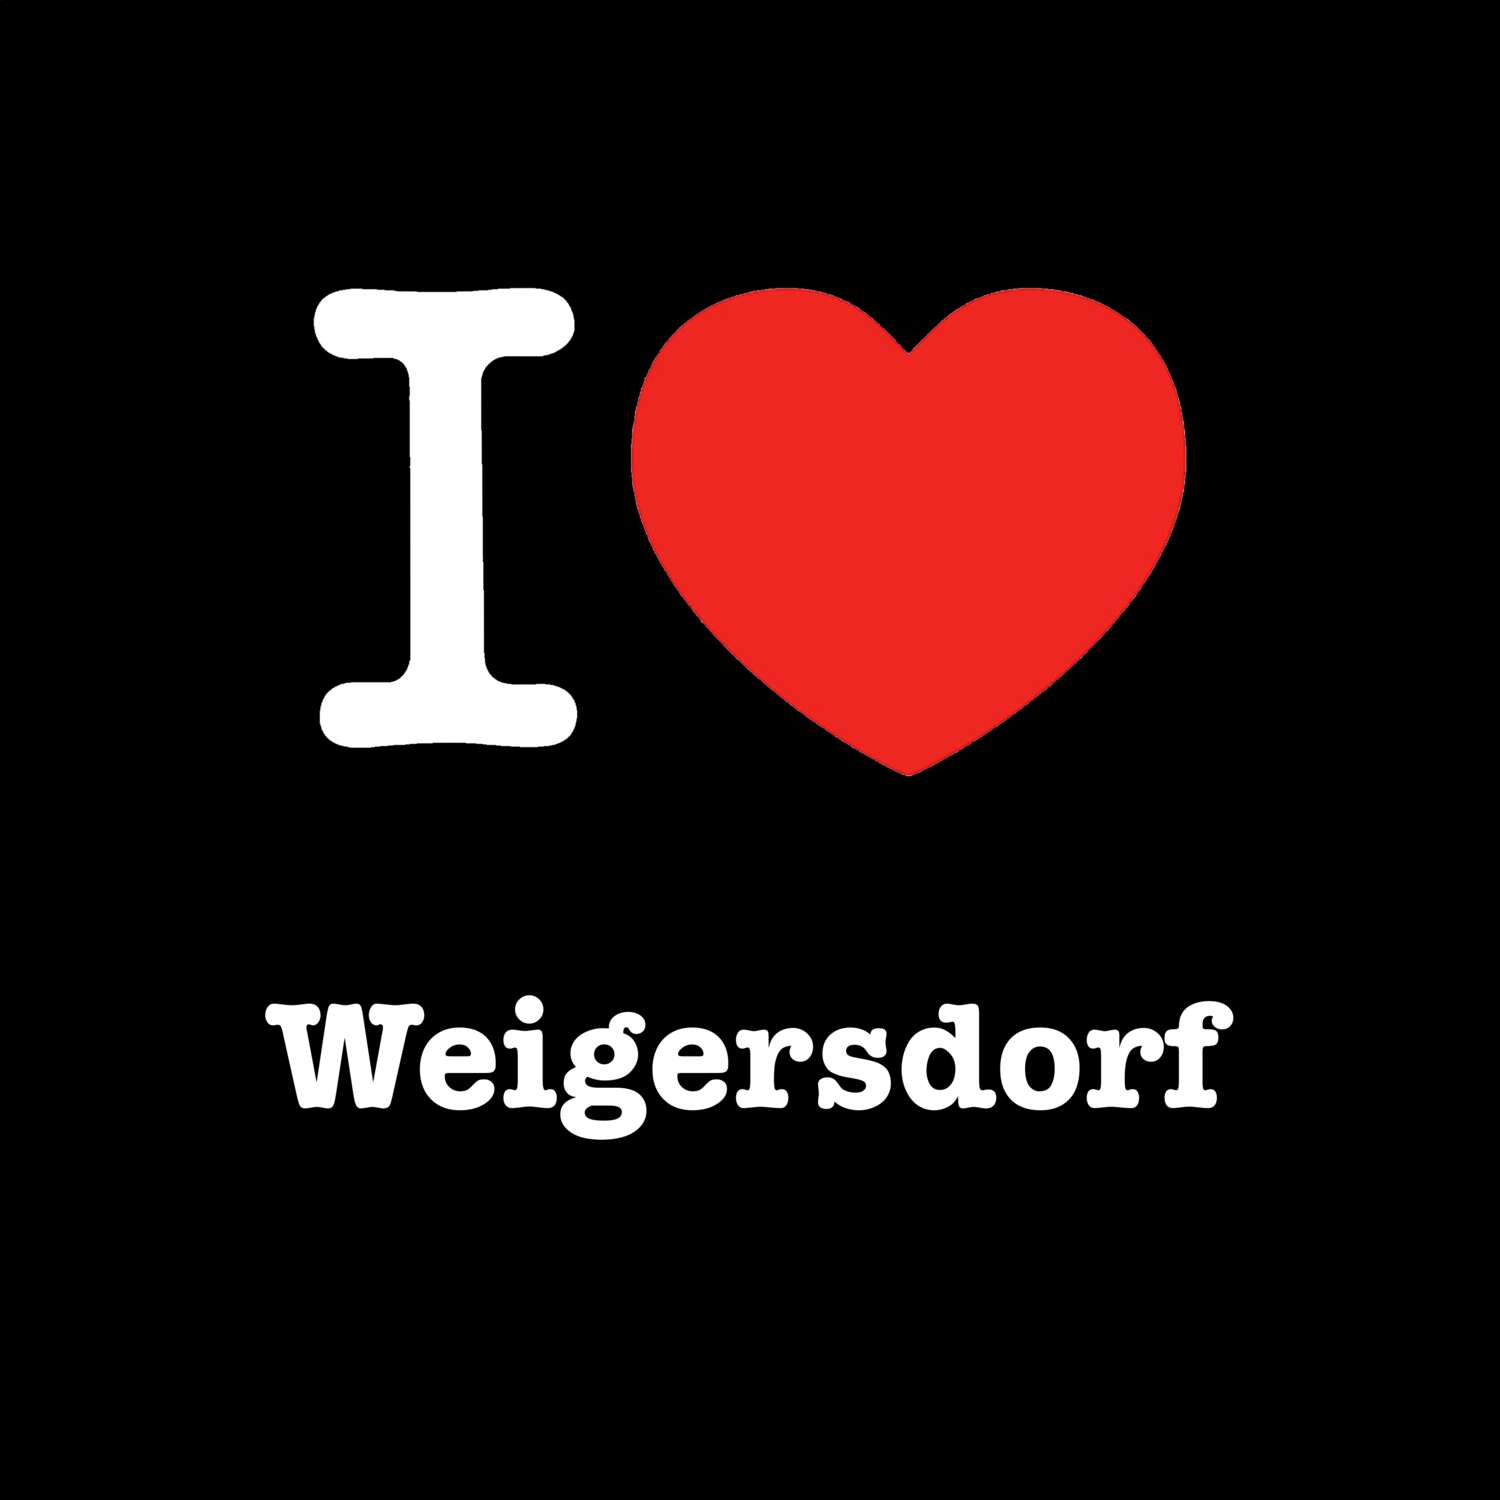 Weigersdorf T-Shirt »I love«